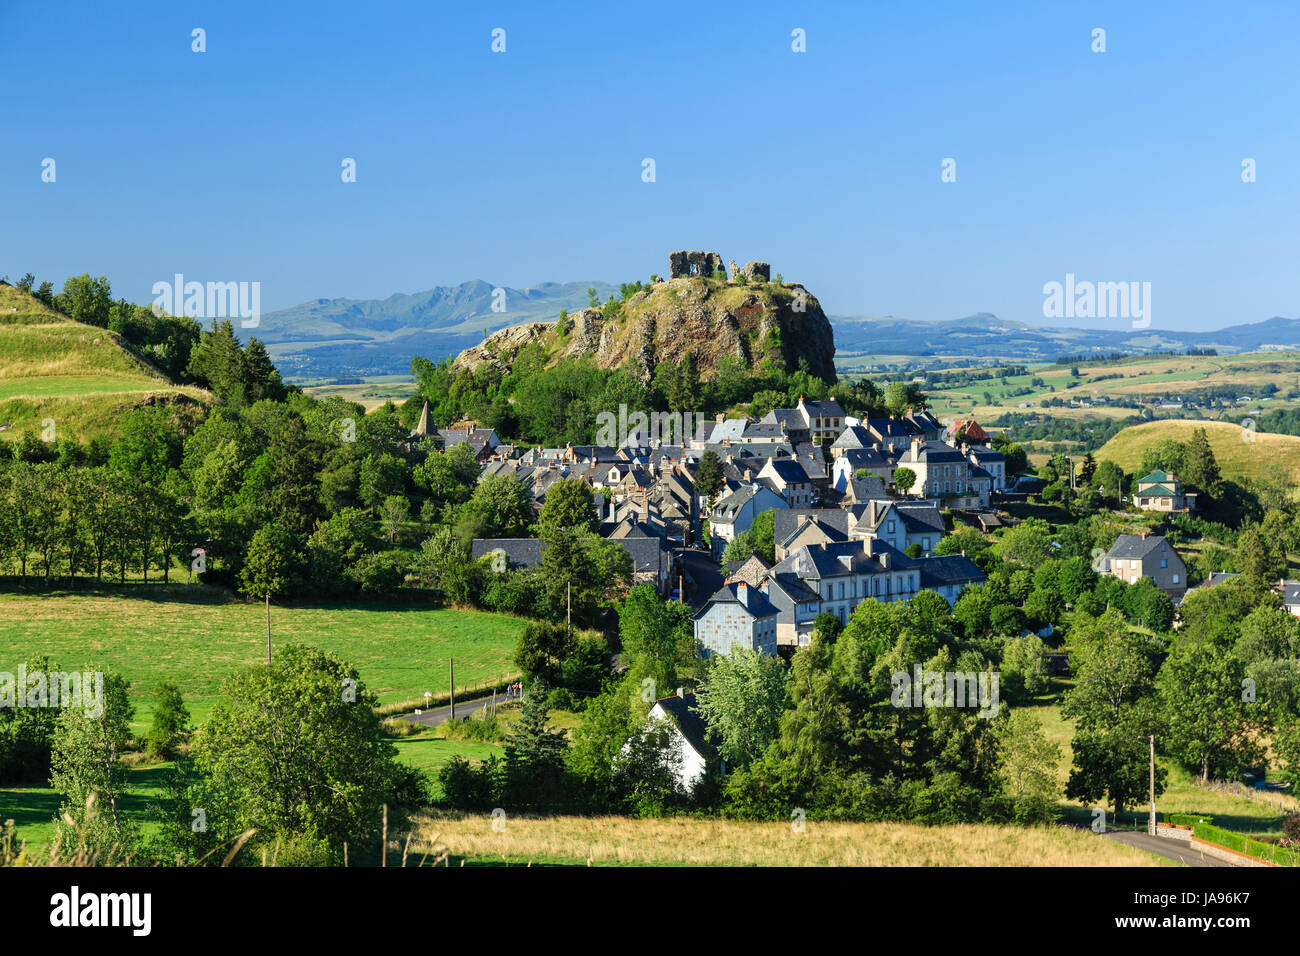 La France, Cantal, Parc Naturel Régional des volcans d'Auvergne, d'Apchon, le village et les ruines du château situé au sommet d'un dyke basaltique Banque D'Images